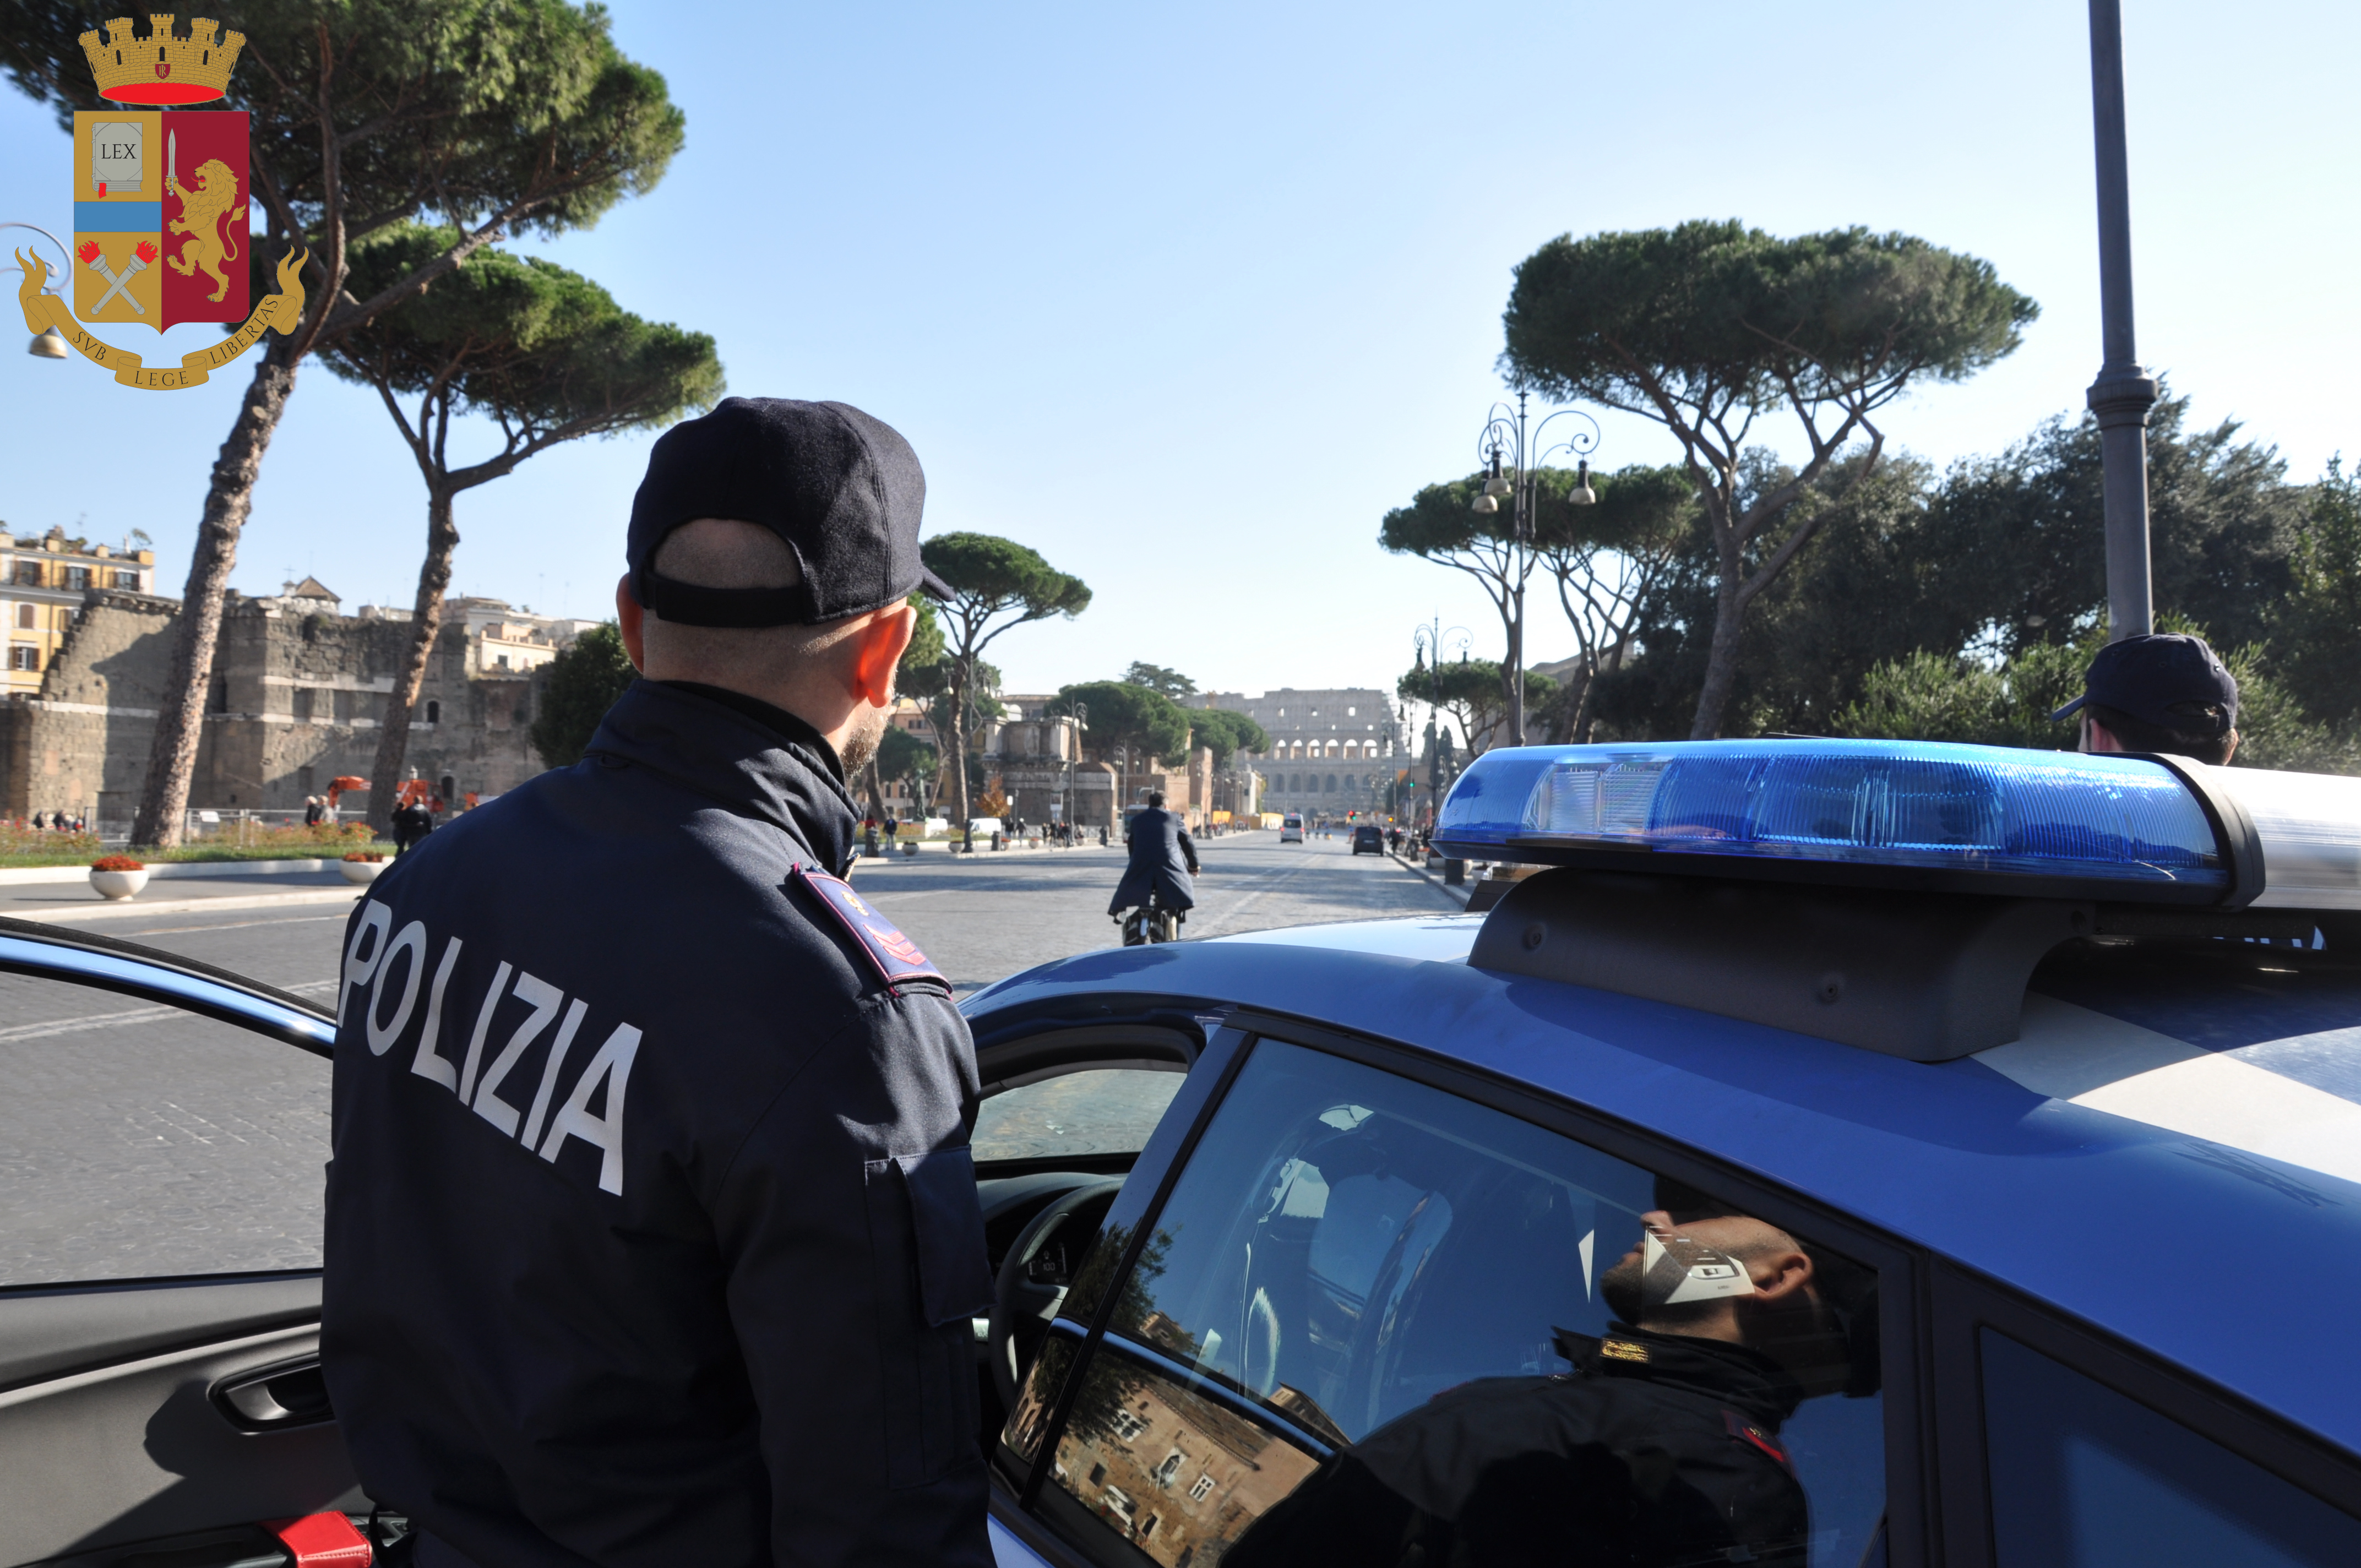 Contrasto al Crimine Diffuso: arrestati due cittadini italiani